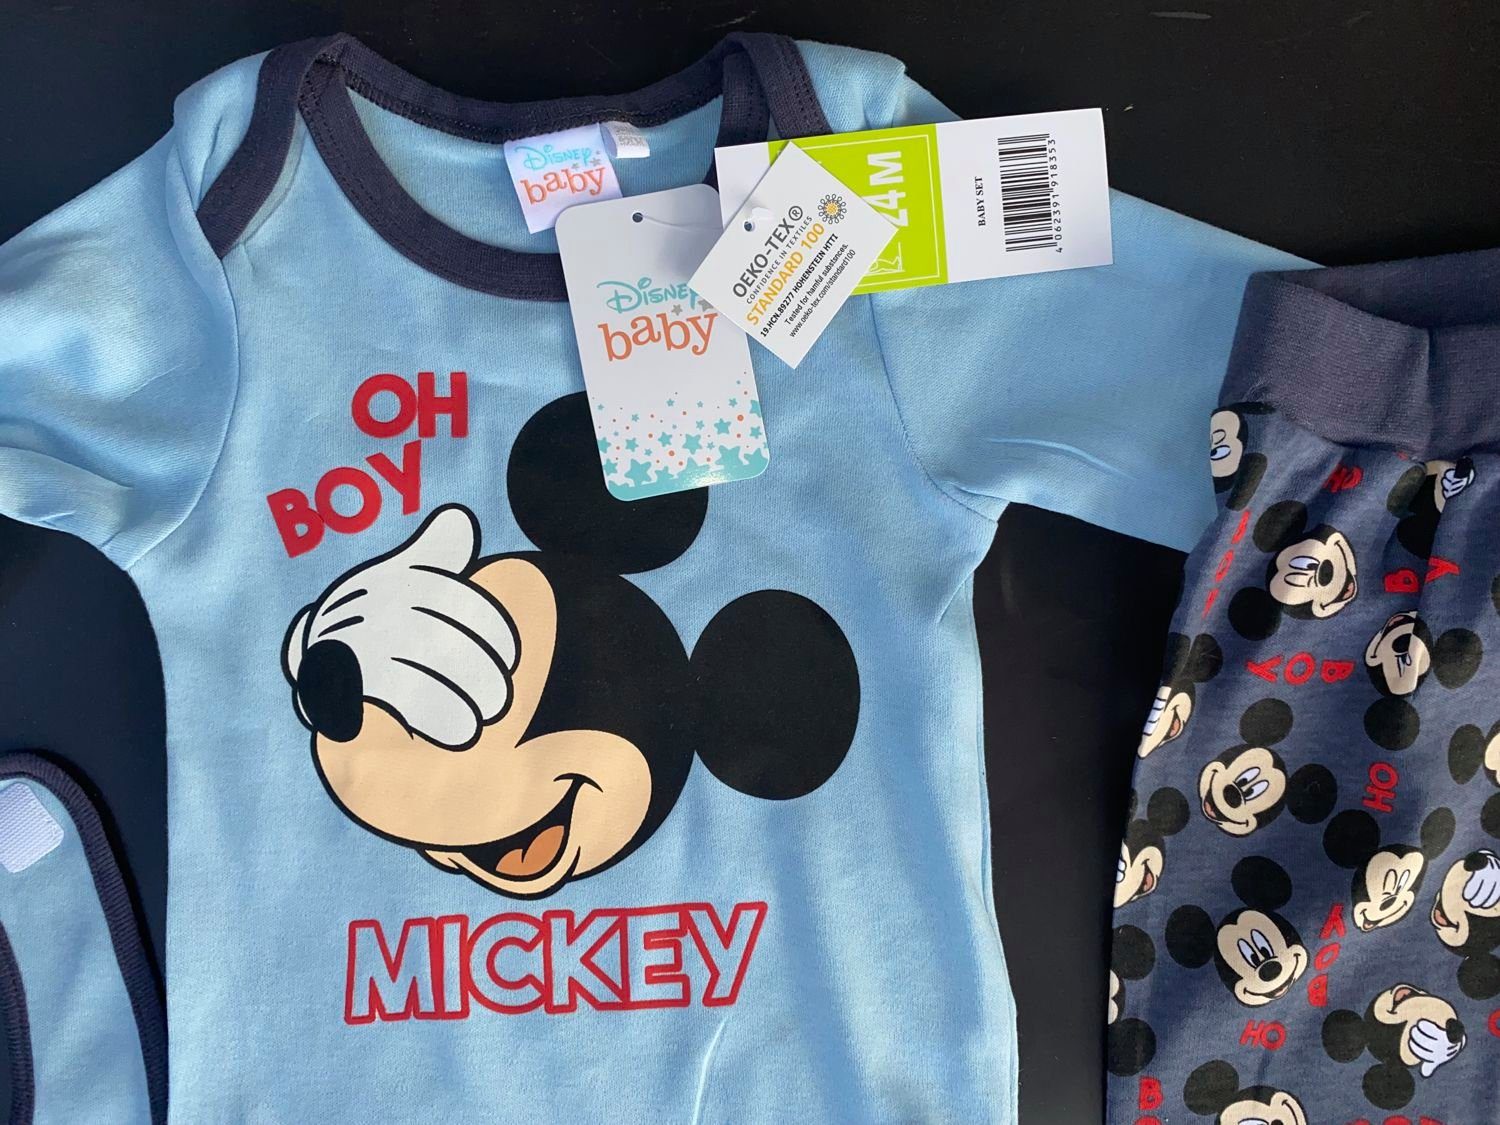 Junge 3-teiler Baby Outfit Set mit Mickey Mouse für Junge in Größe 80 86 92 98 104 Disney mit Baby-Hose Langarm-Shirt und Mütze für 1 2 3 Jahre 